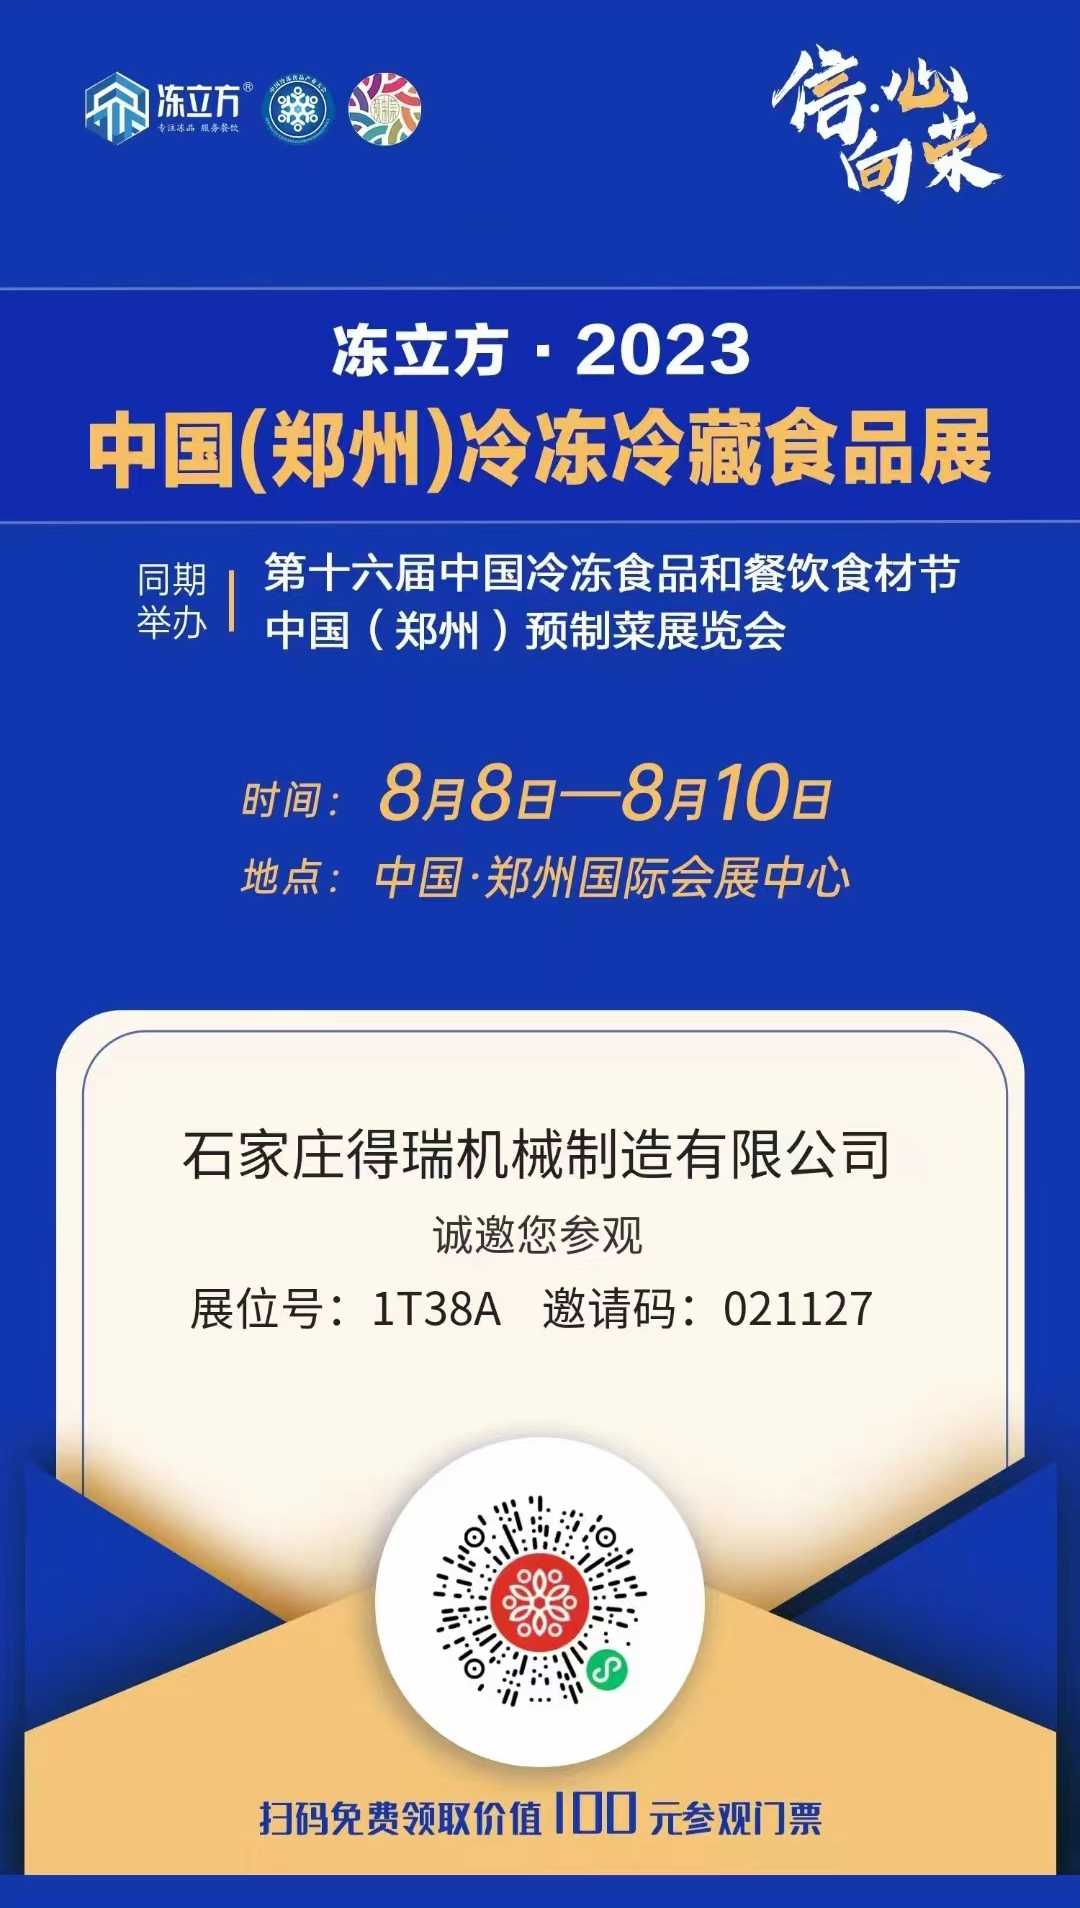 冻立方.2023中国郑州冷冻冷藏食品展